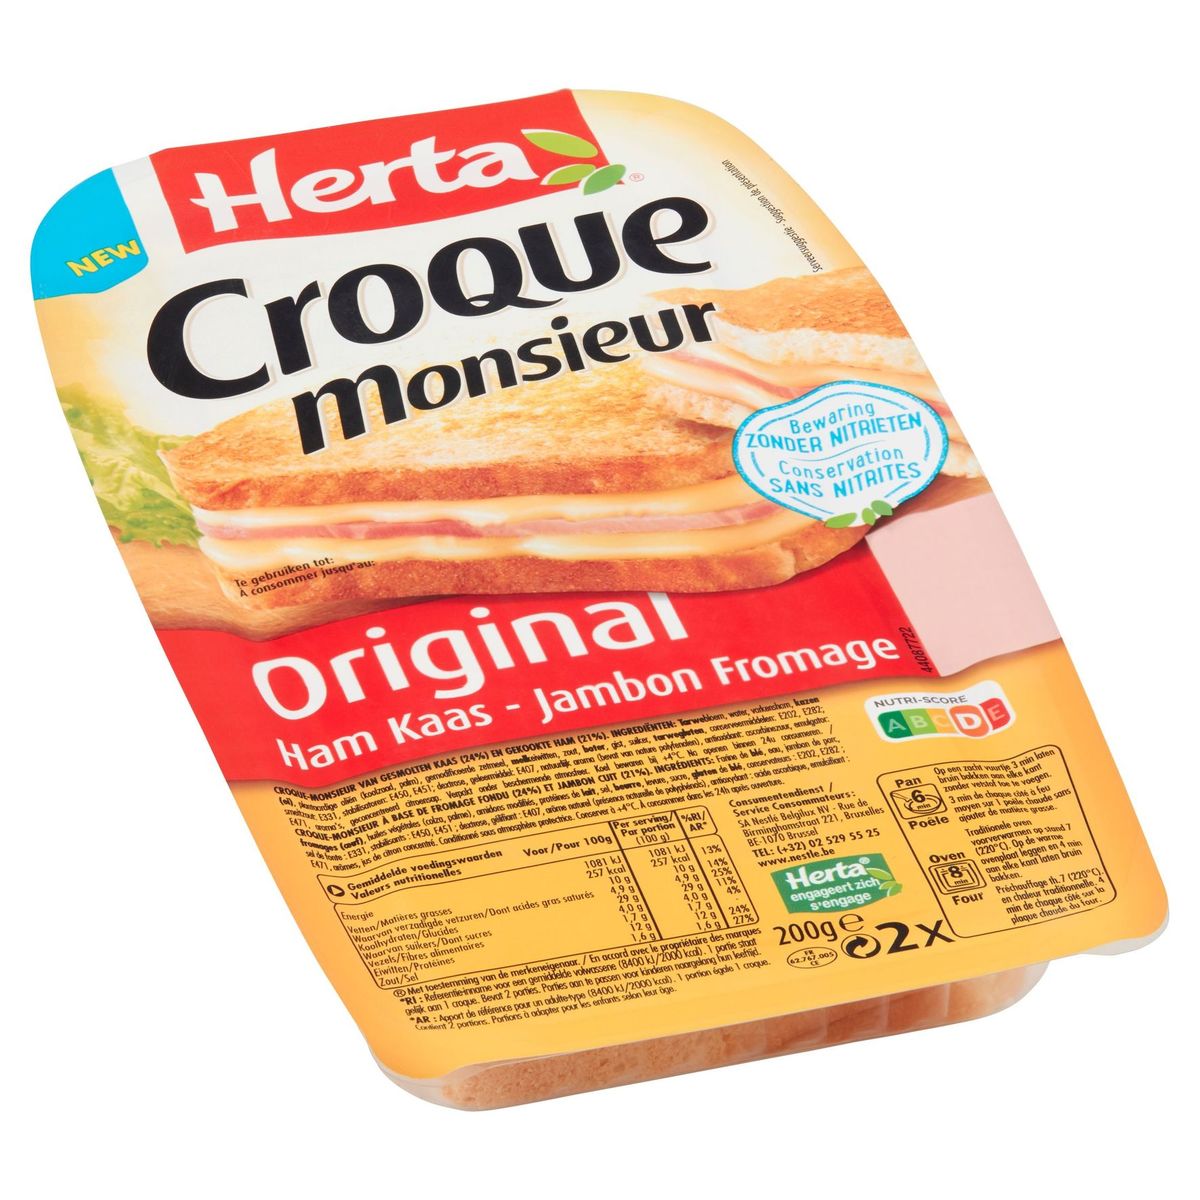 Herta Croque Monsieur Original Ham Kaas 200 g